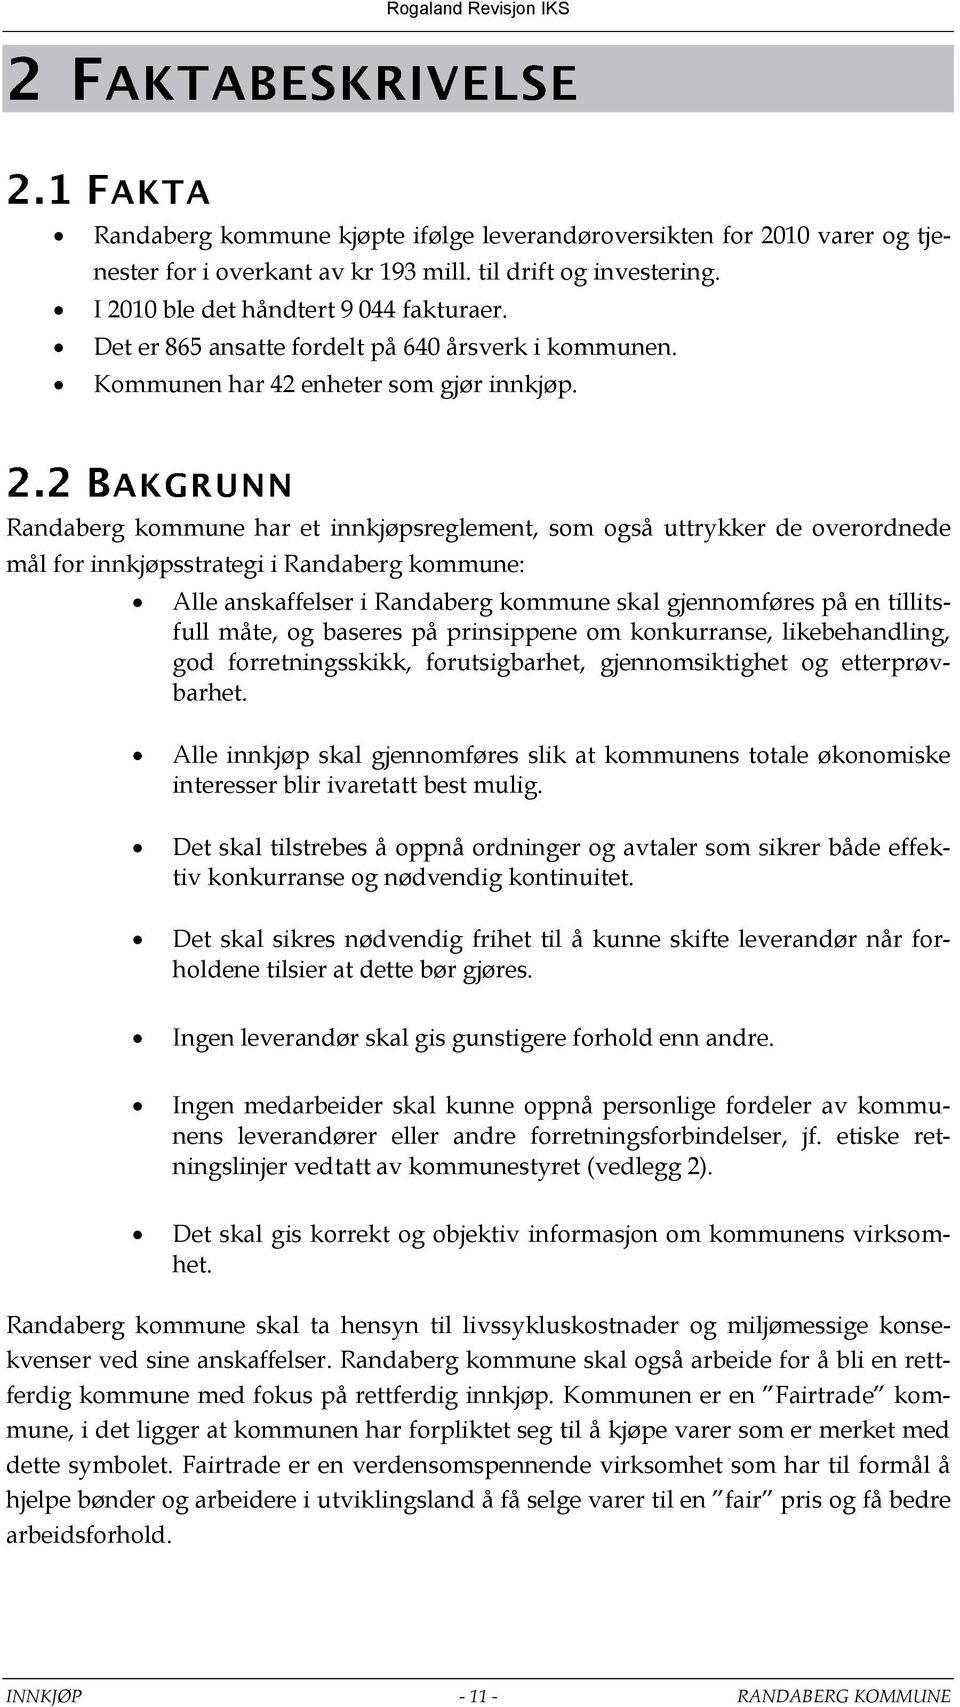 Randaberg kommune har et innkjøpsreglement, som også uttrykker de overordnede mål for innkjøpsstrategi i Randaberg kommune: Alle anskaffelser i Randaberg kommune skal gjennomføres på en tillitsfull